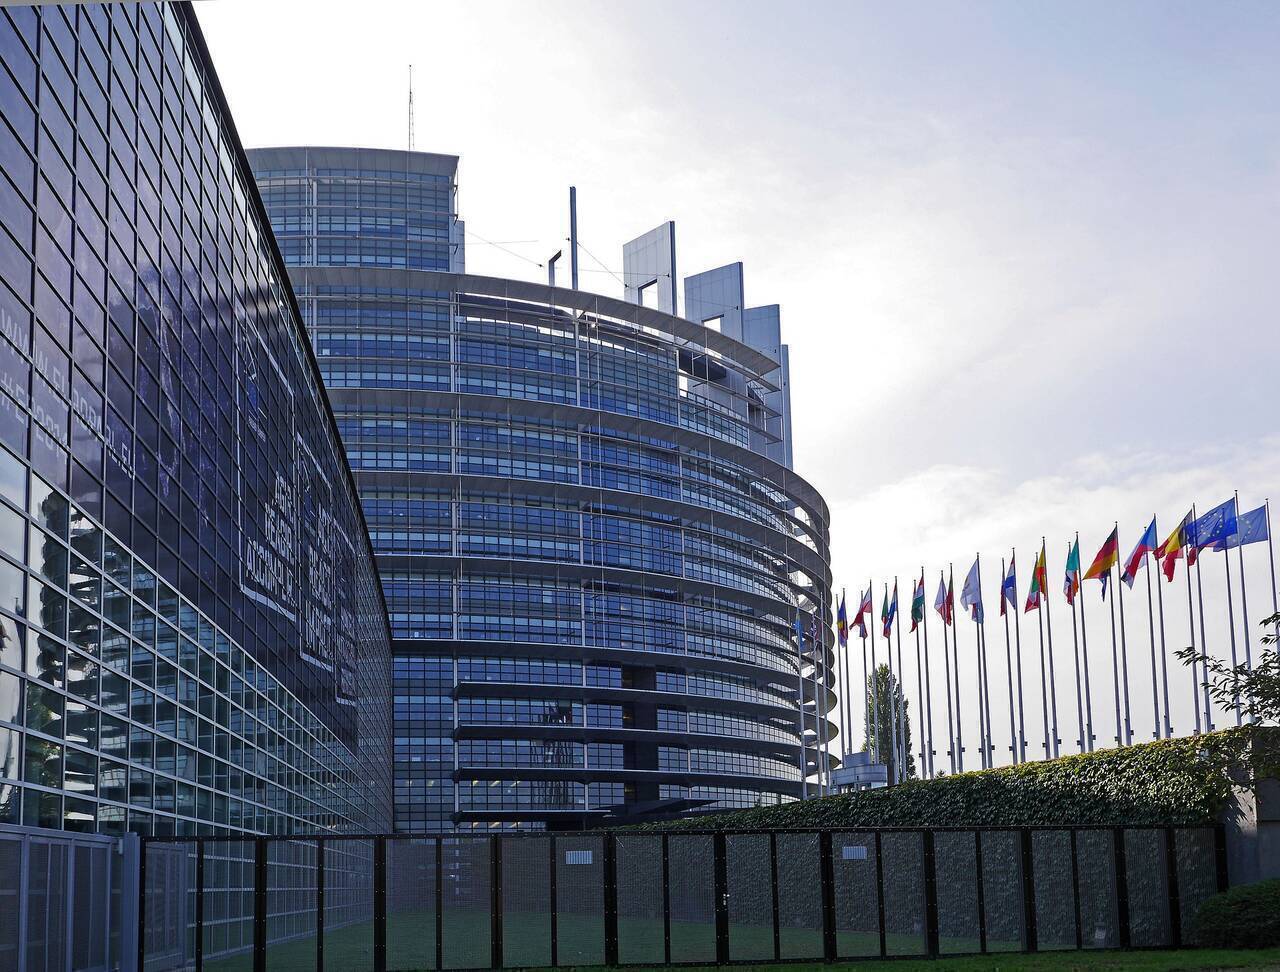 Mecanismul de redresare și reziliență, aprobat în Parlamentul European. Etapele următoare